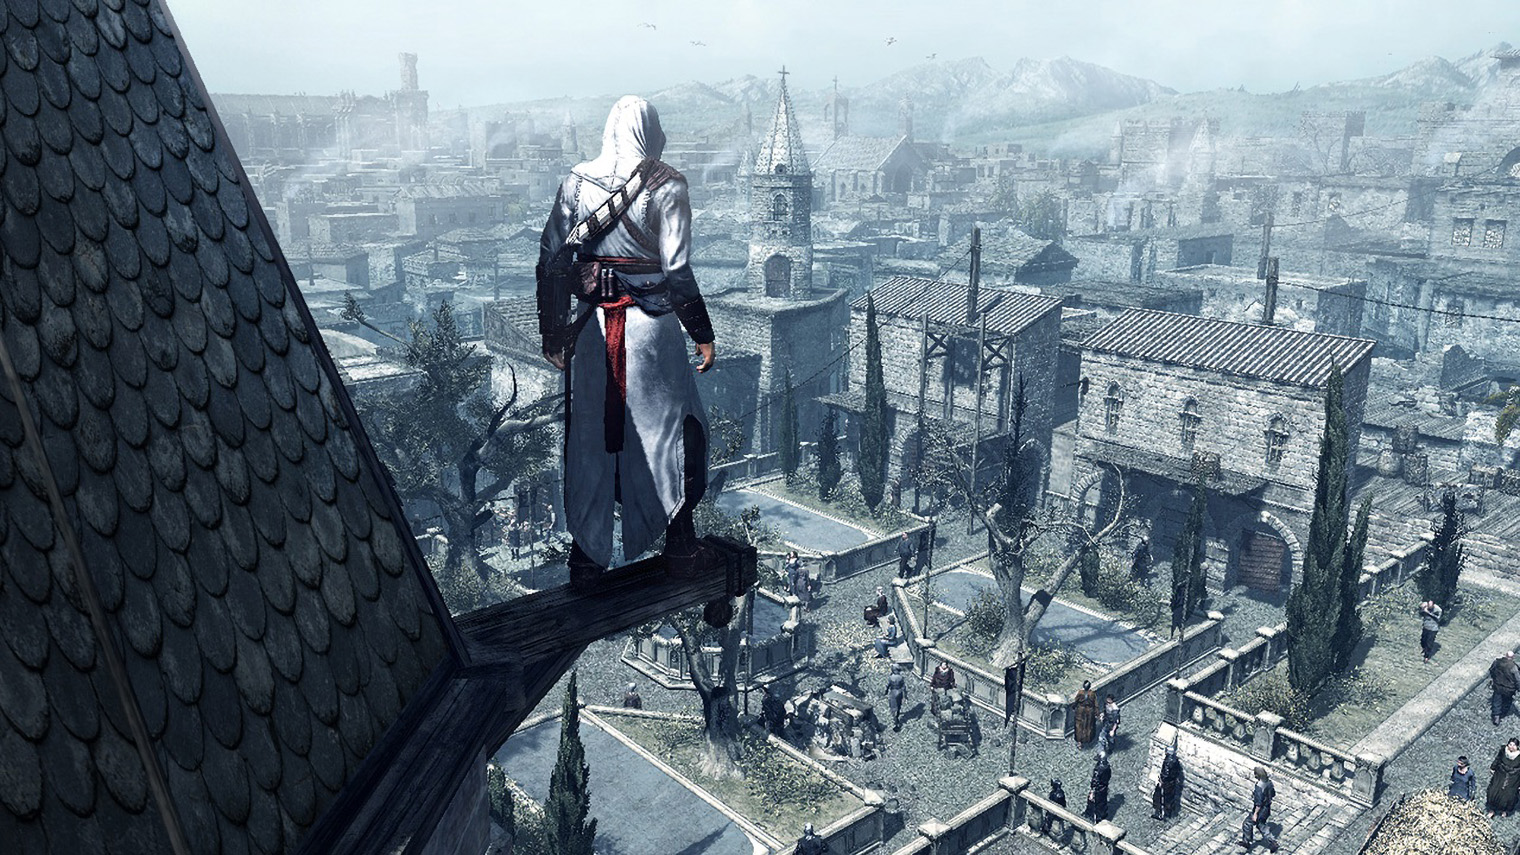 До первой Assassin’s Creed акробатические трюки в играх проходили по строго заданному маршруту. Уровни же больше напоминали искусственные полосы препятствий. И только в этой игре можно было почувствовать себя настоящим паркурщиком, свободным от ограничений. Источник: Ubisoft